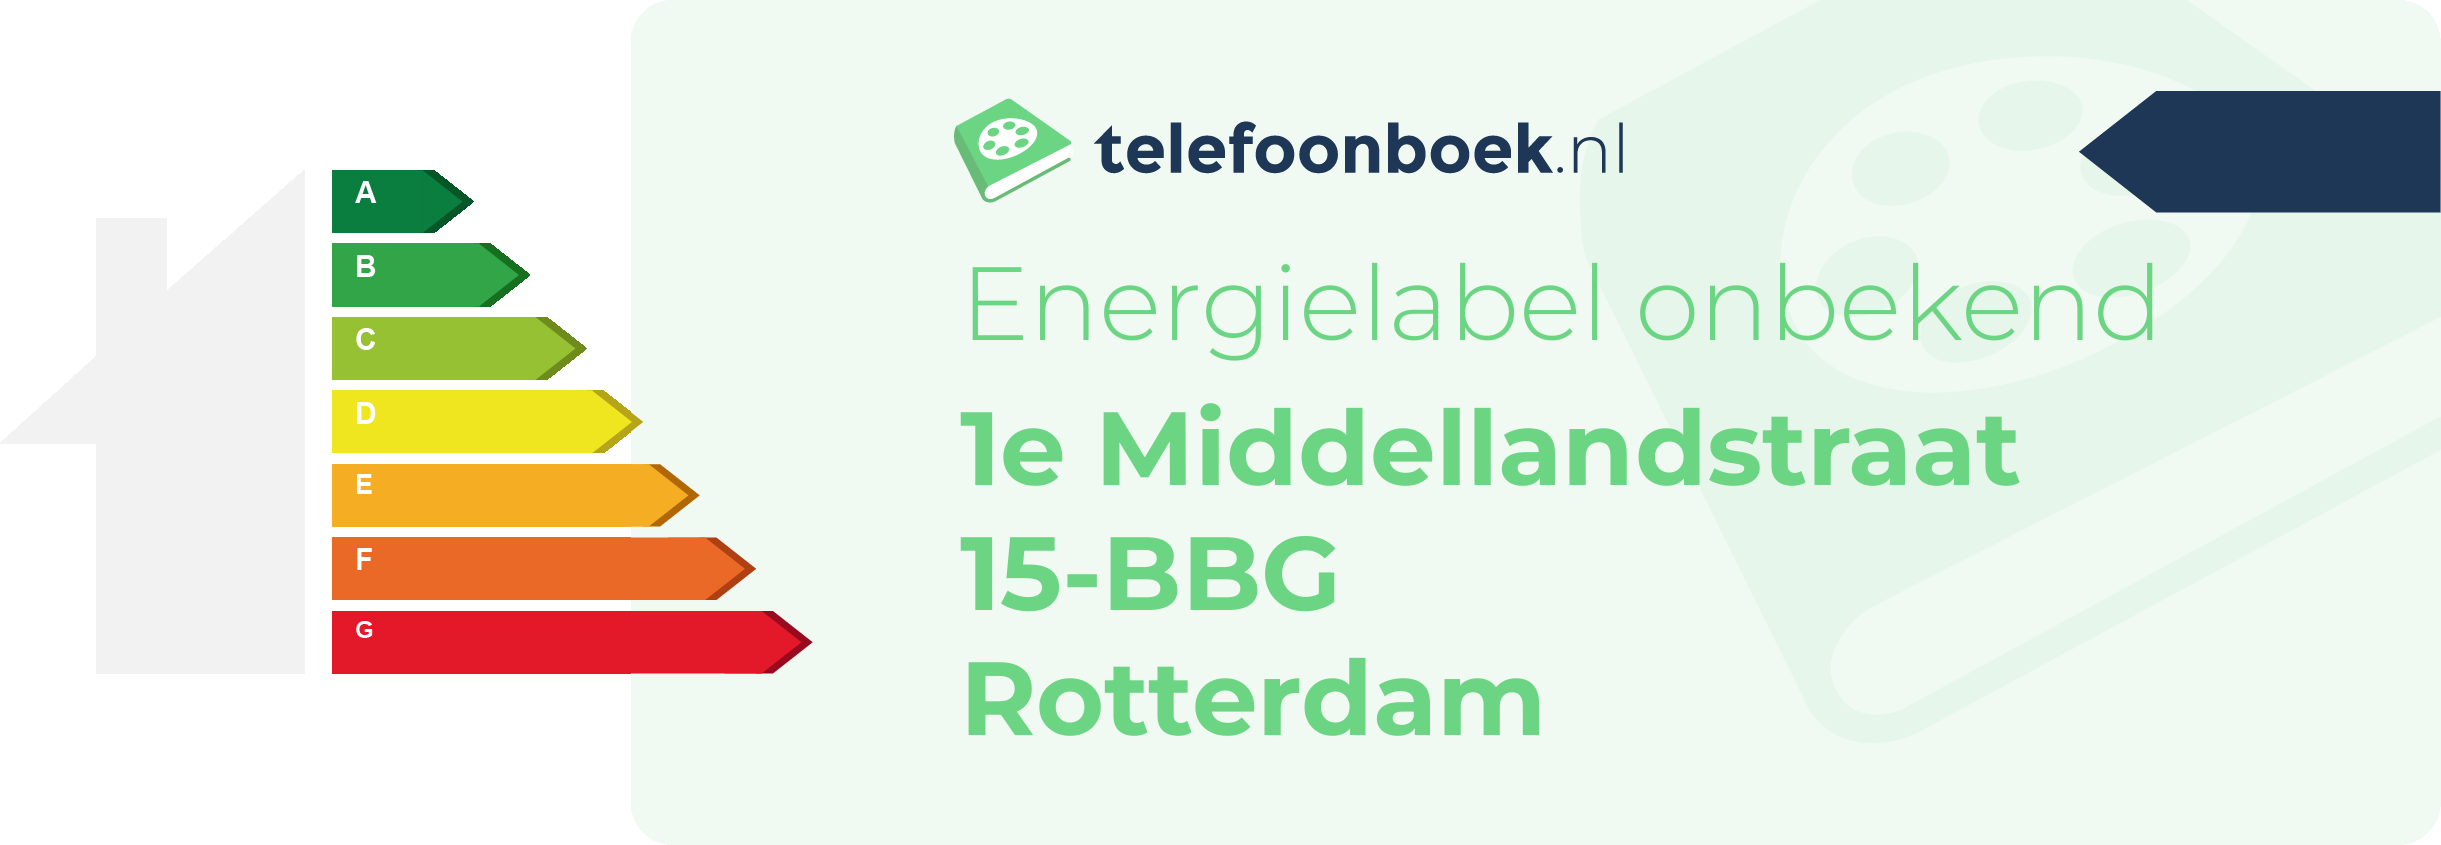 Energielabel 1e Middellandstraat 15-BBG Rotterdam